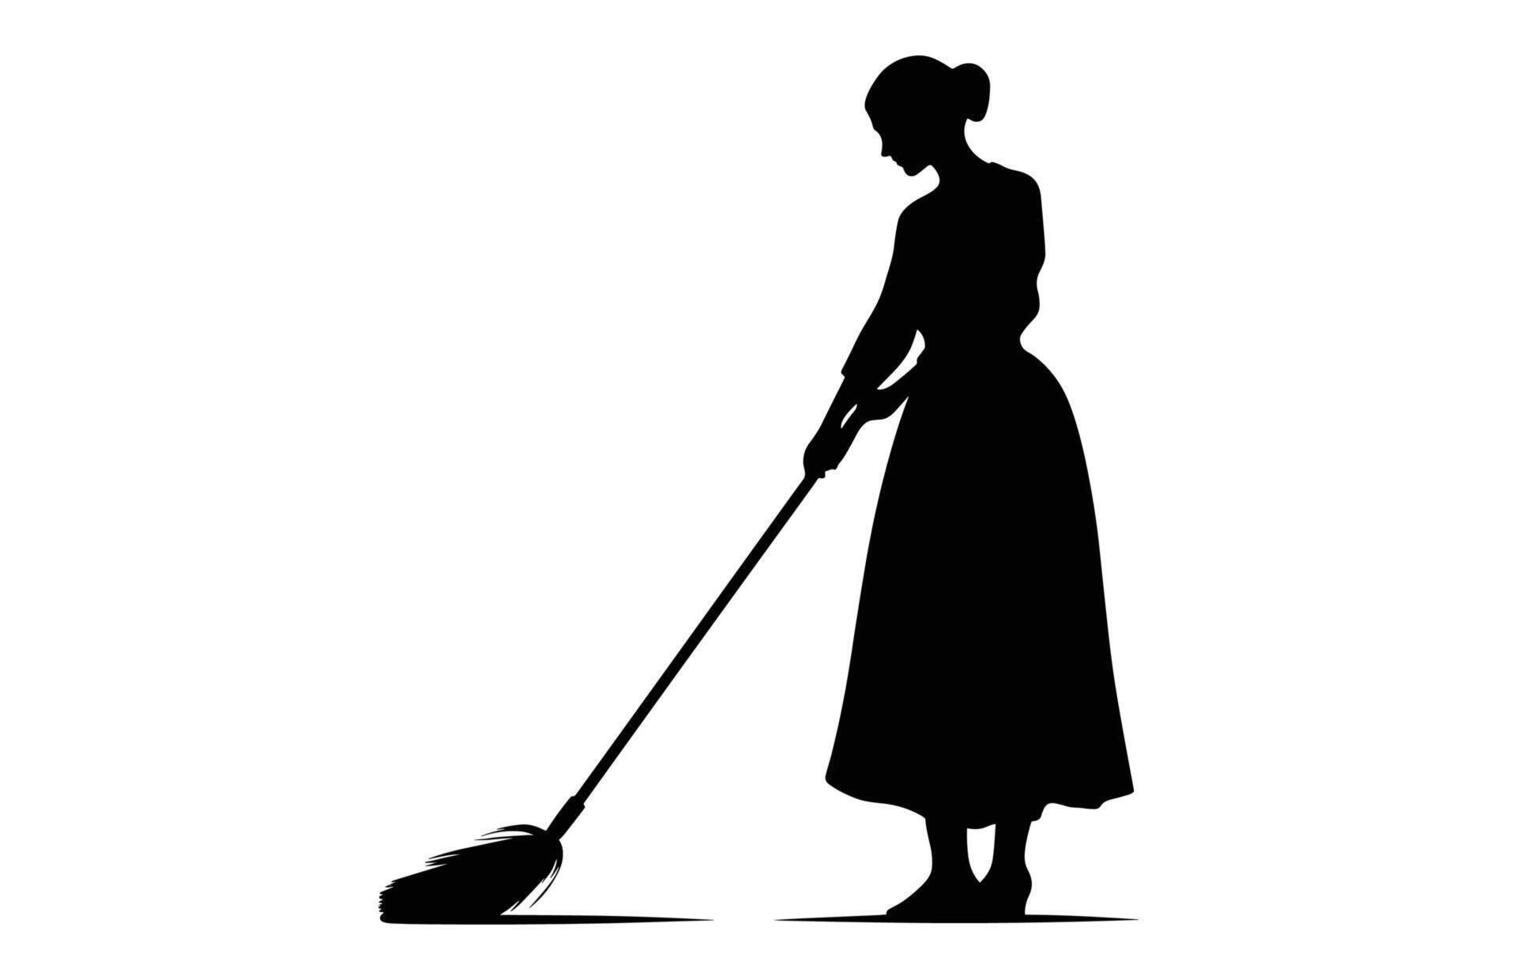 mujer limpiador silueta aislado en un blanco fondo, limpieza dama negro clipart, barrendero niña negro y blanco vector